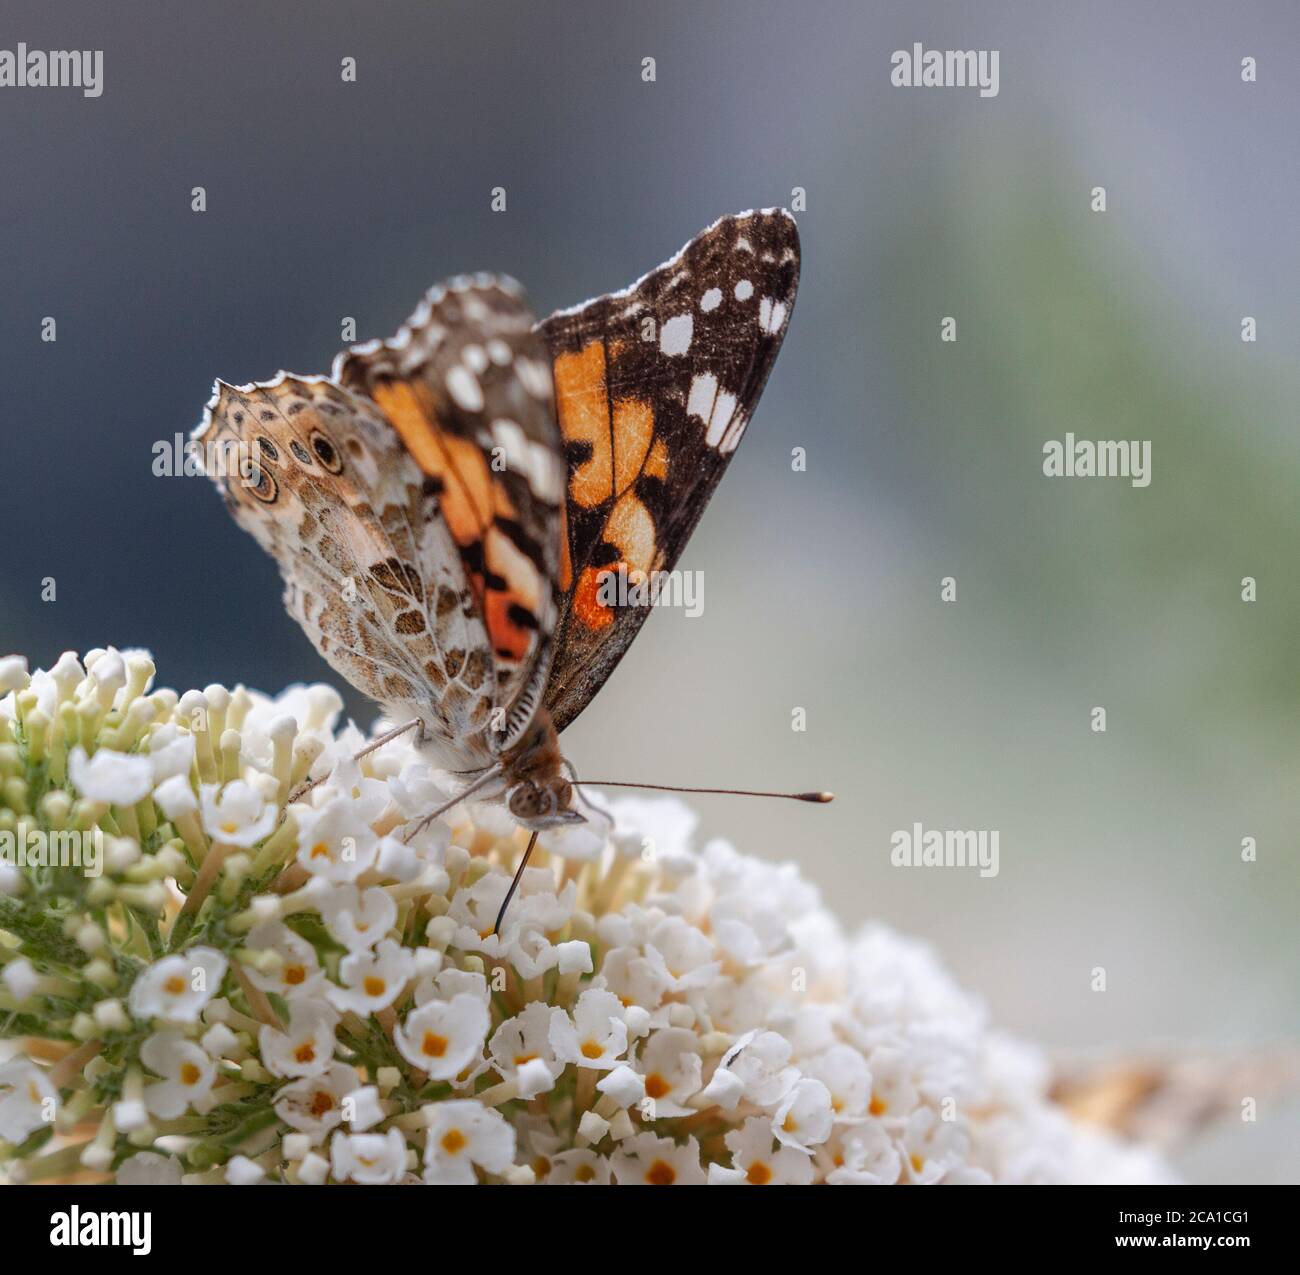 Un papillon lady peint, Vanessa cardui, buvant le nectar d'une panicule Buzz Buddleja blanche de fleurs Banque D'Images